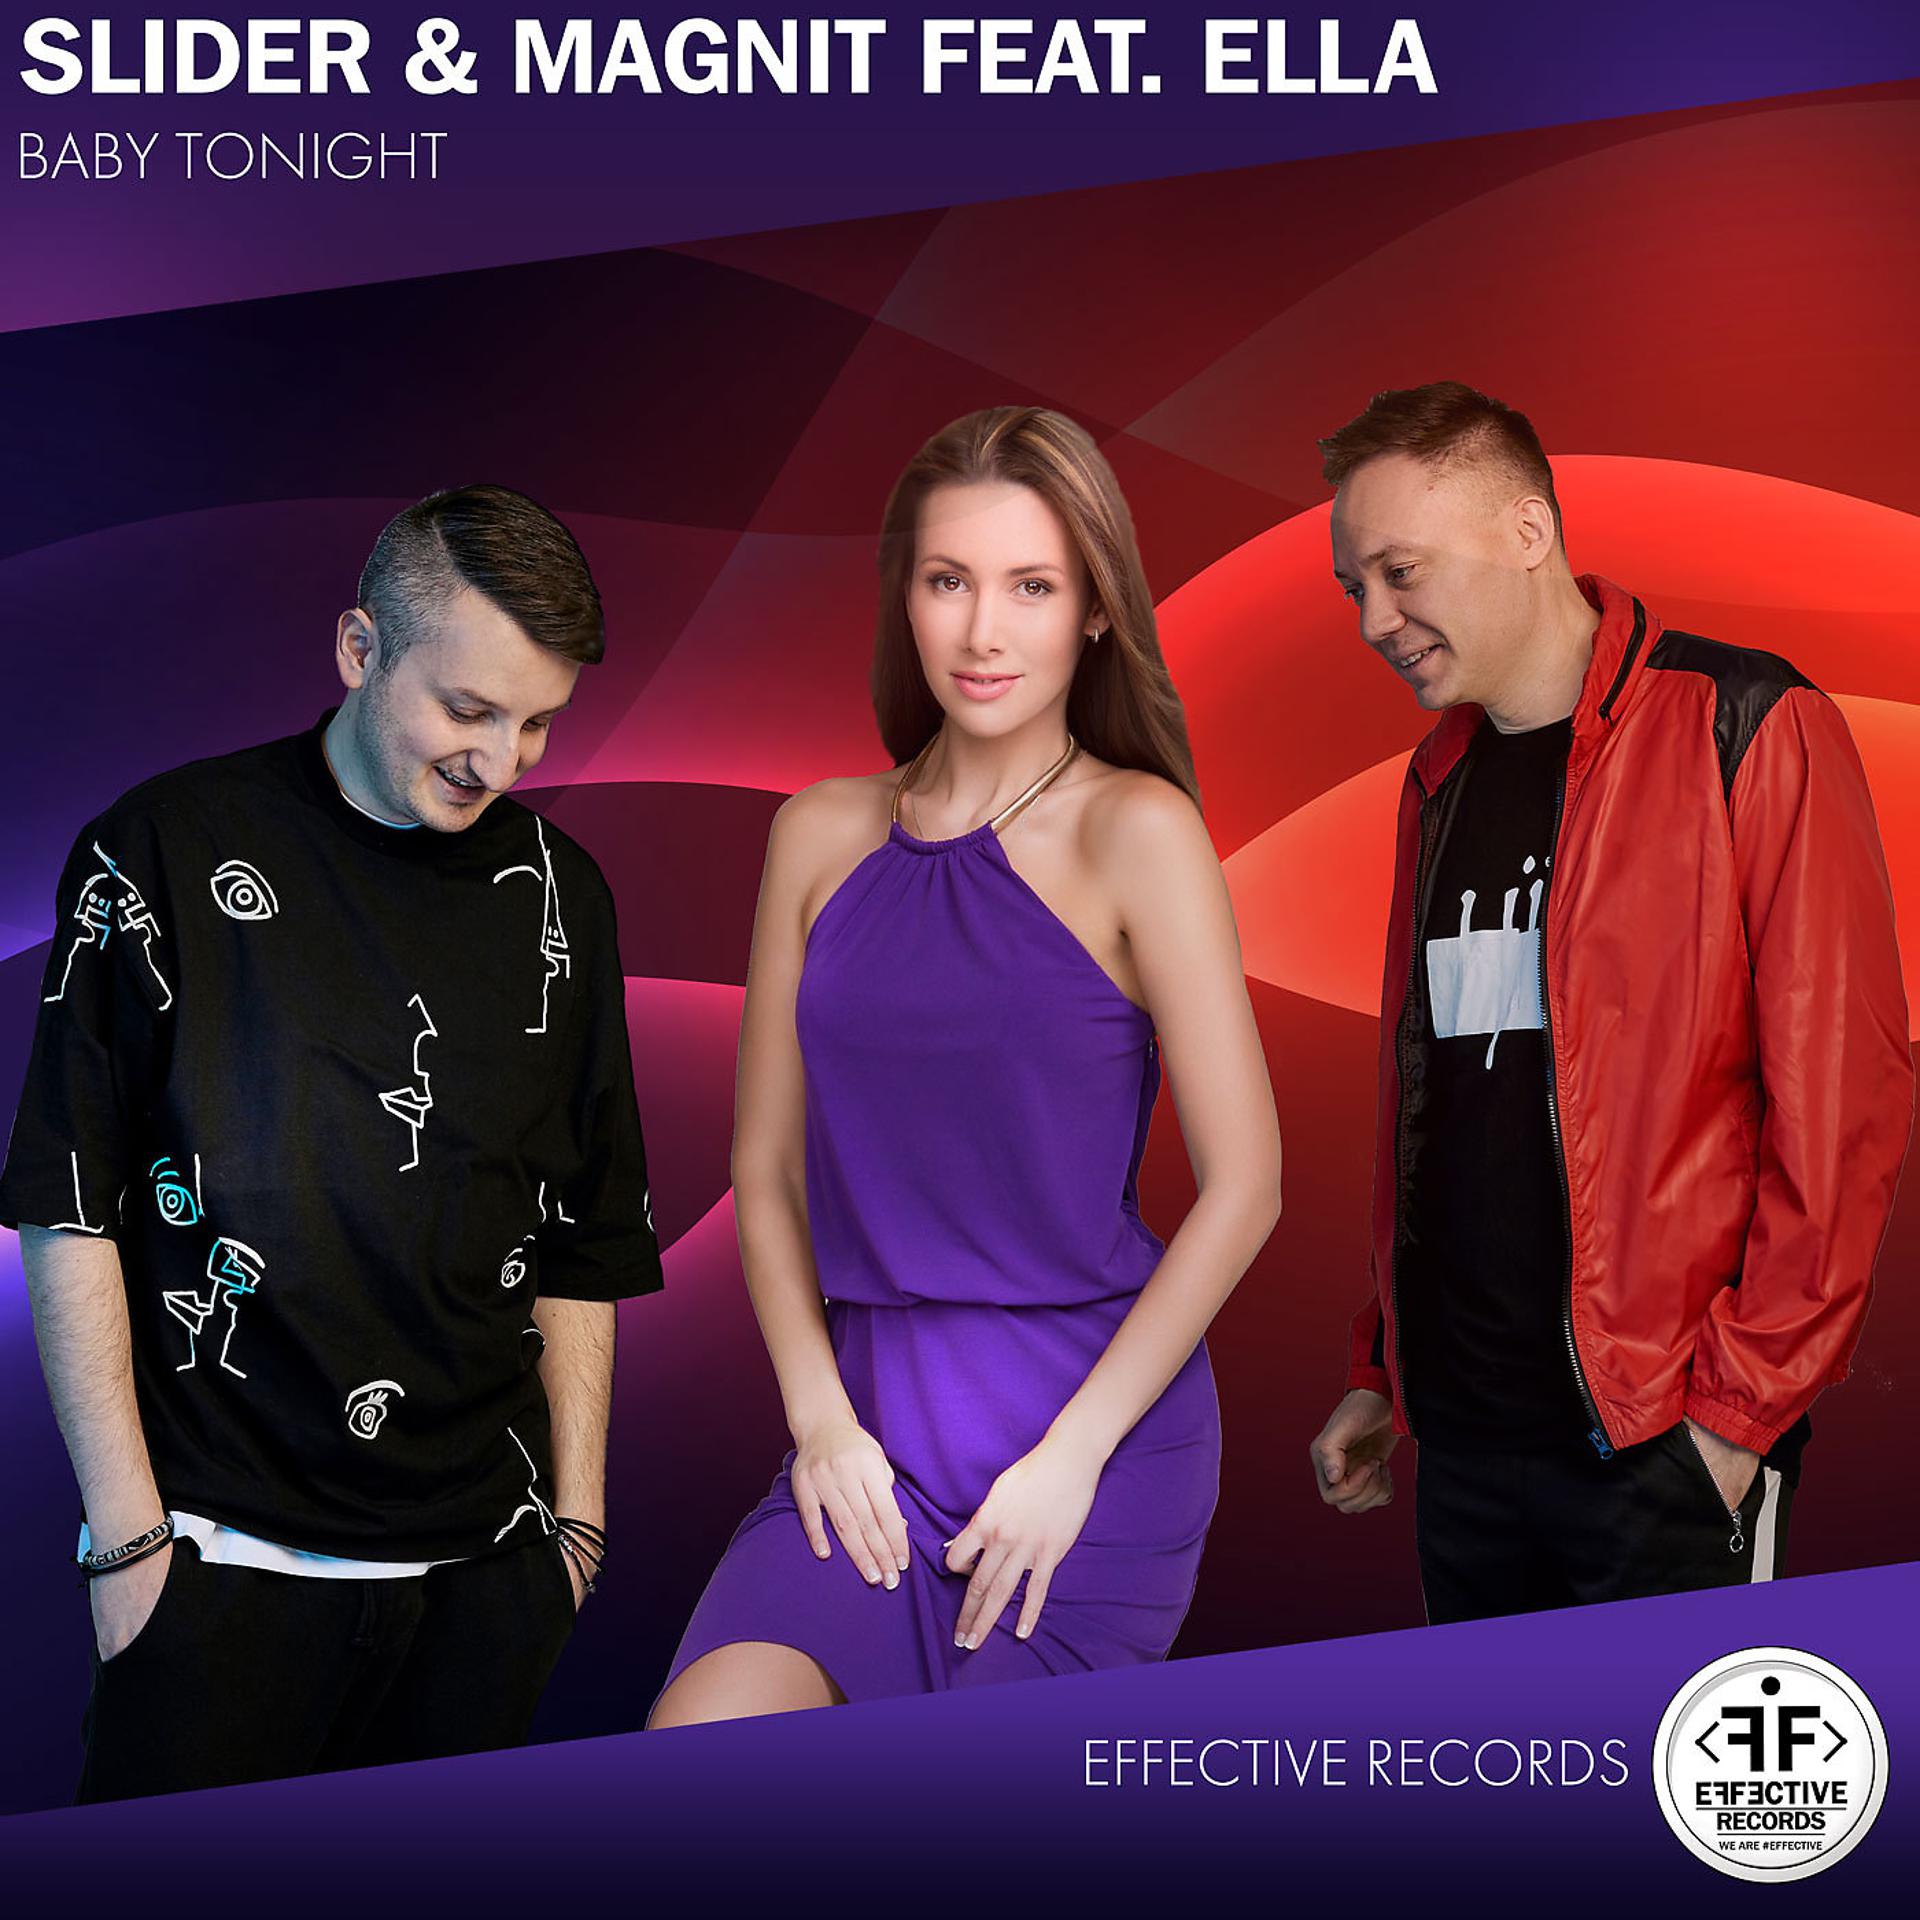 Слайдер и магнит. Slider Magnit туда. Slider & Magnit feat. Ella. Slider Magnit фото.